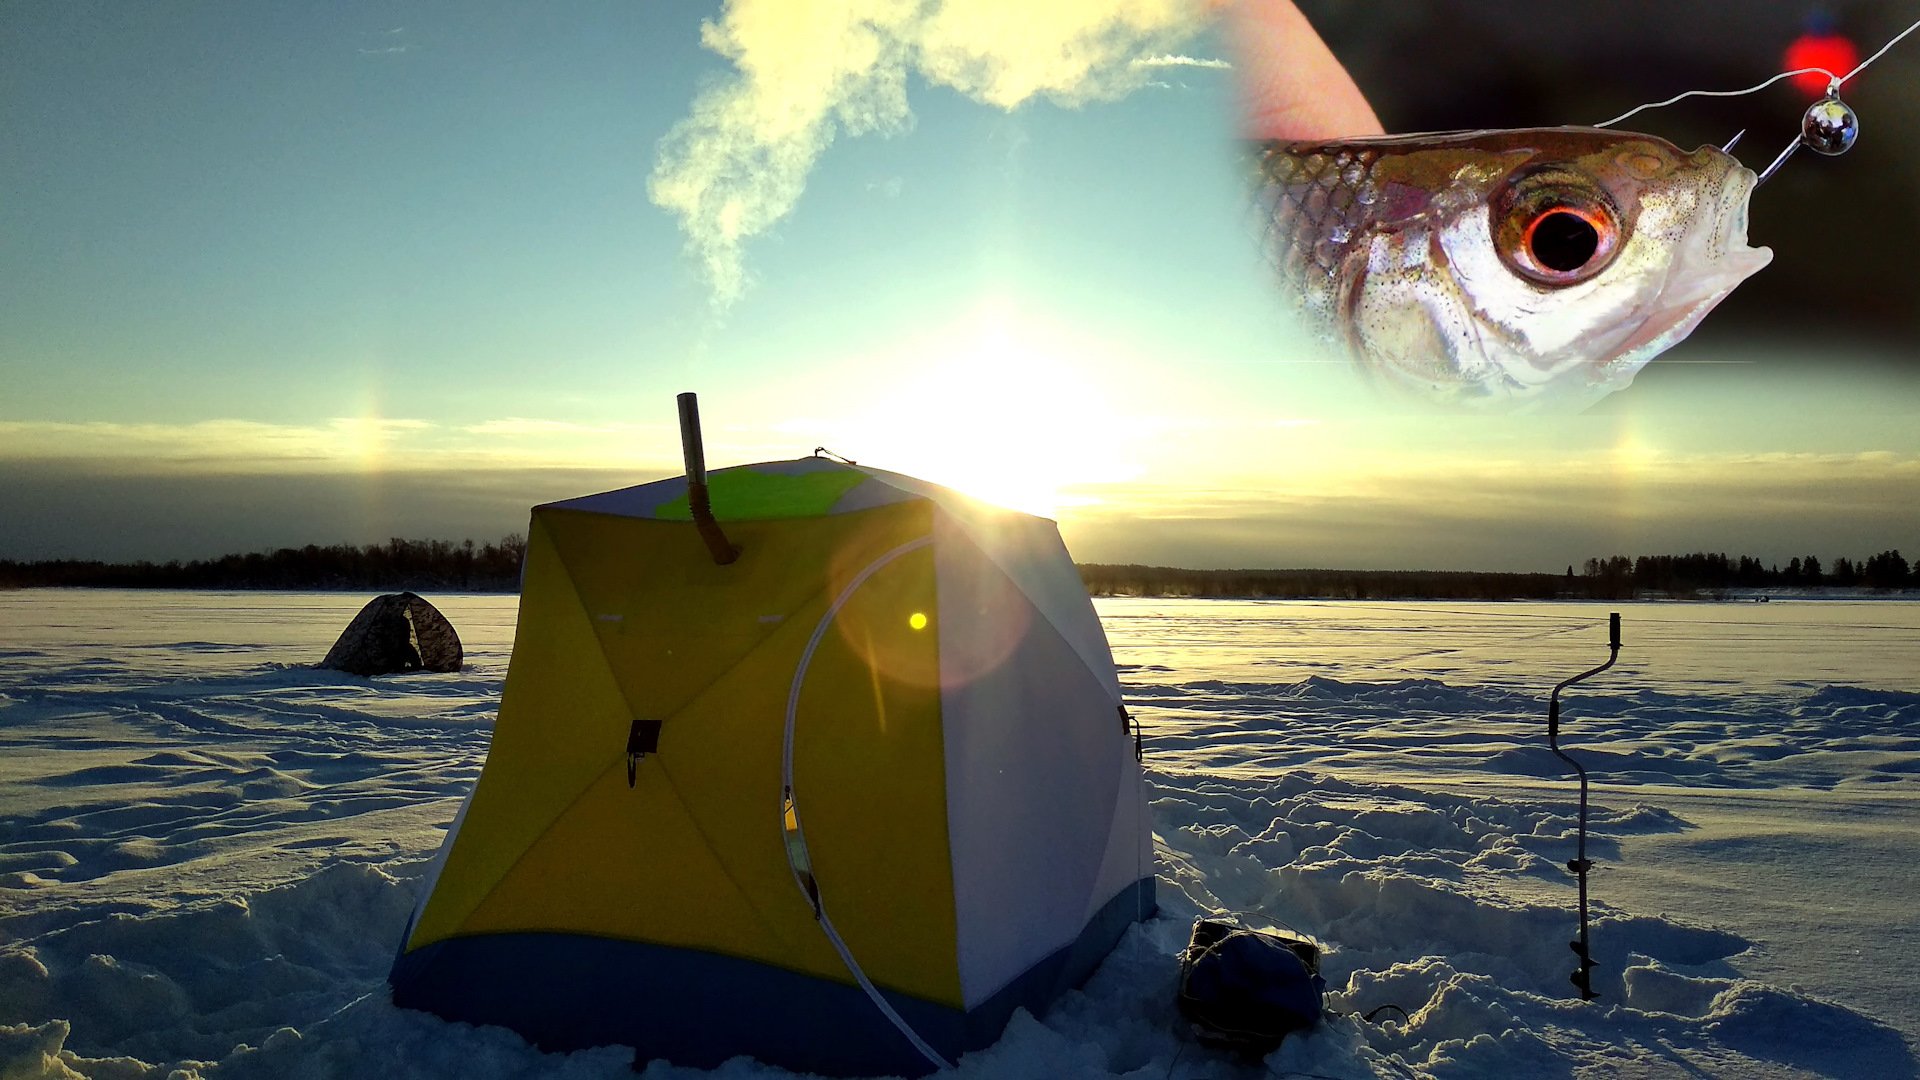 Зимняя рыбалка в палатке. Зимняя рыбалка. Рыбалка в палатке зимой. Зимняя рыбалка на льду в палатке. Рыбаки зимой в палатках.